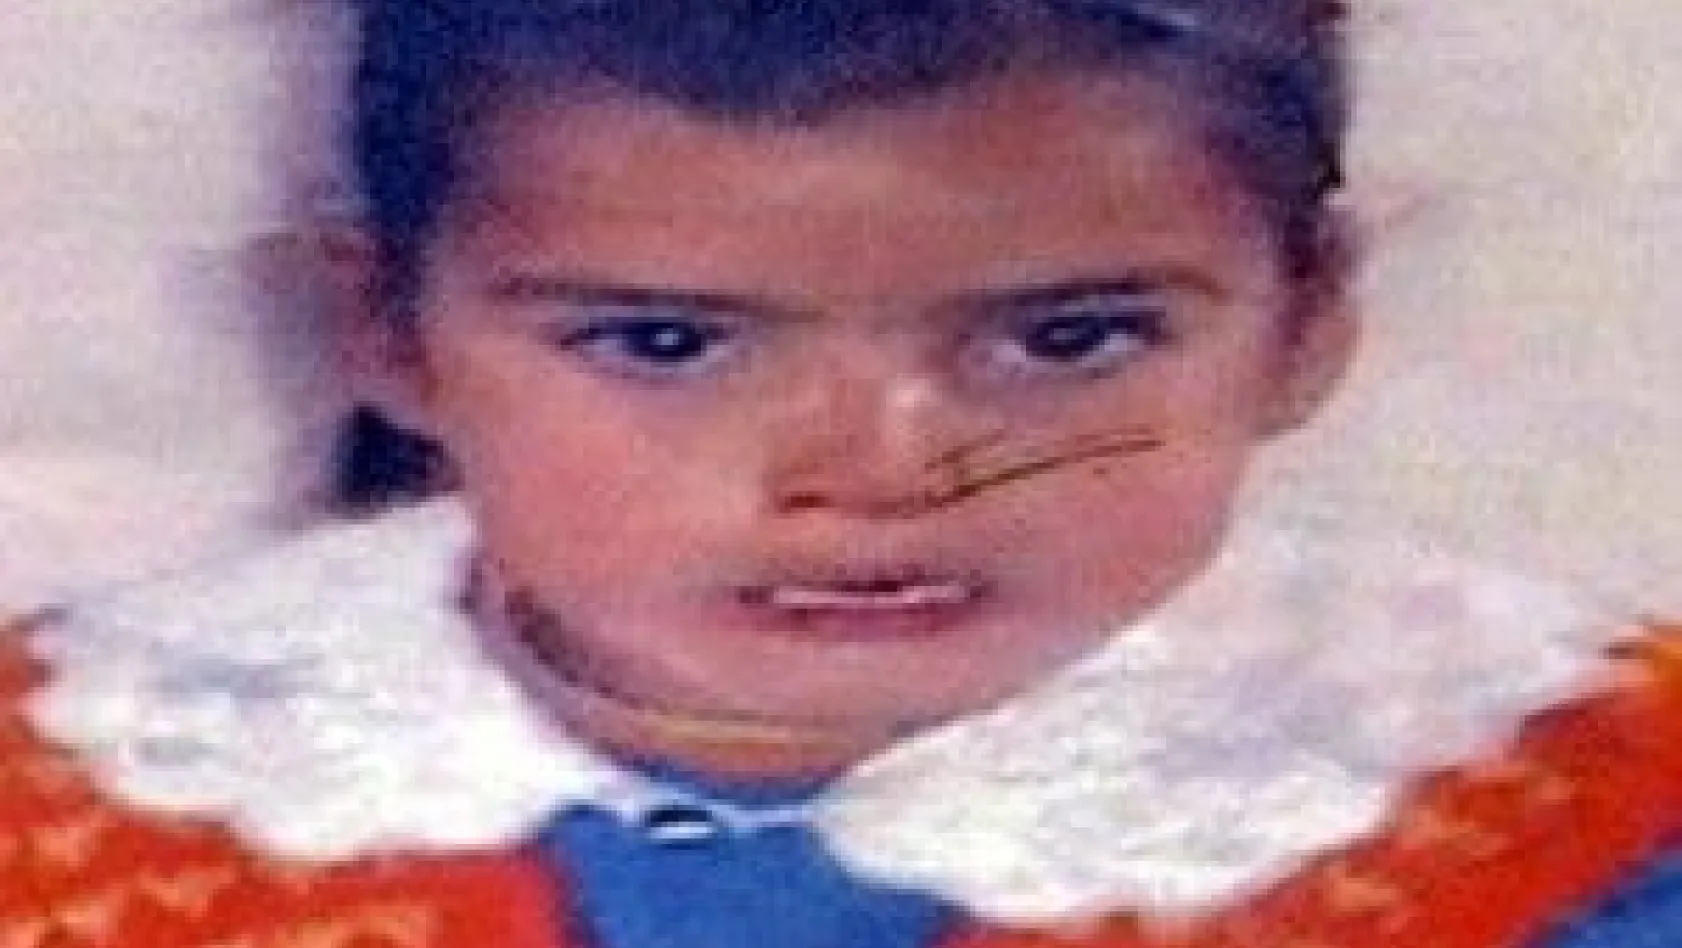 Erzurum'da 8 yıl önce kaybolan 7 yaşındaki 2 kız çocuğundan haber yok
